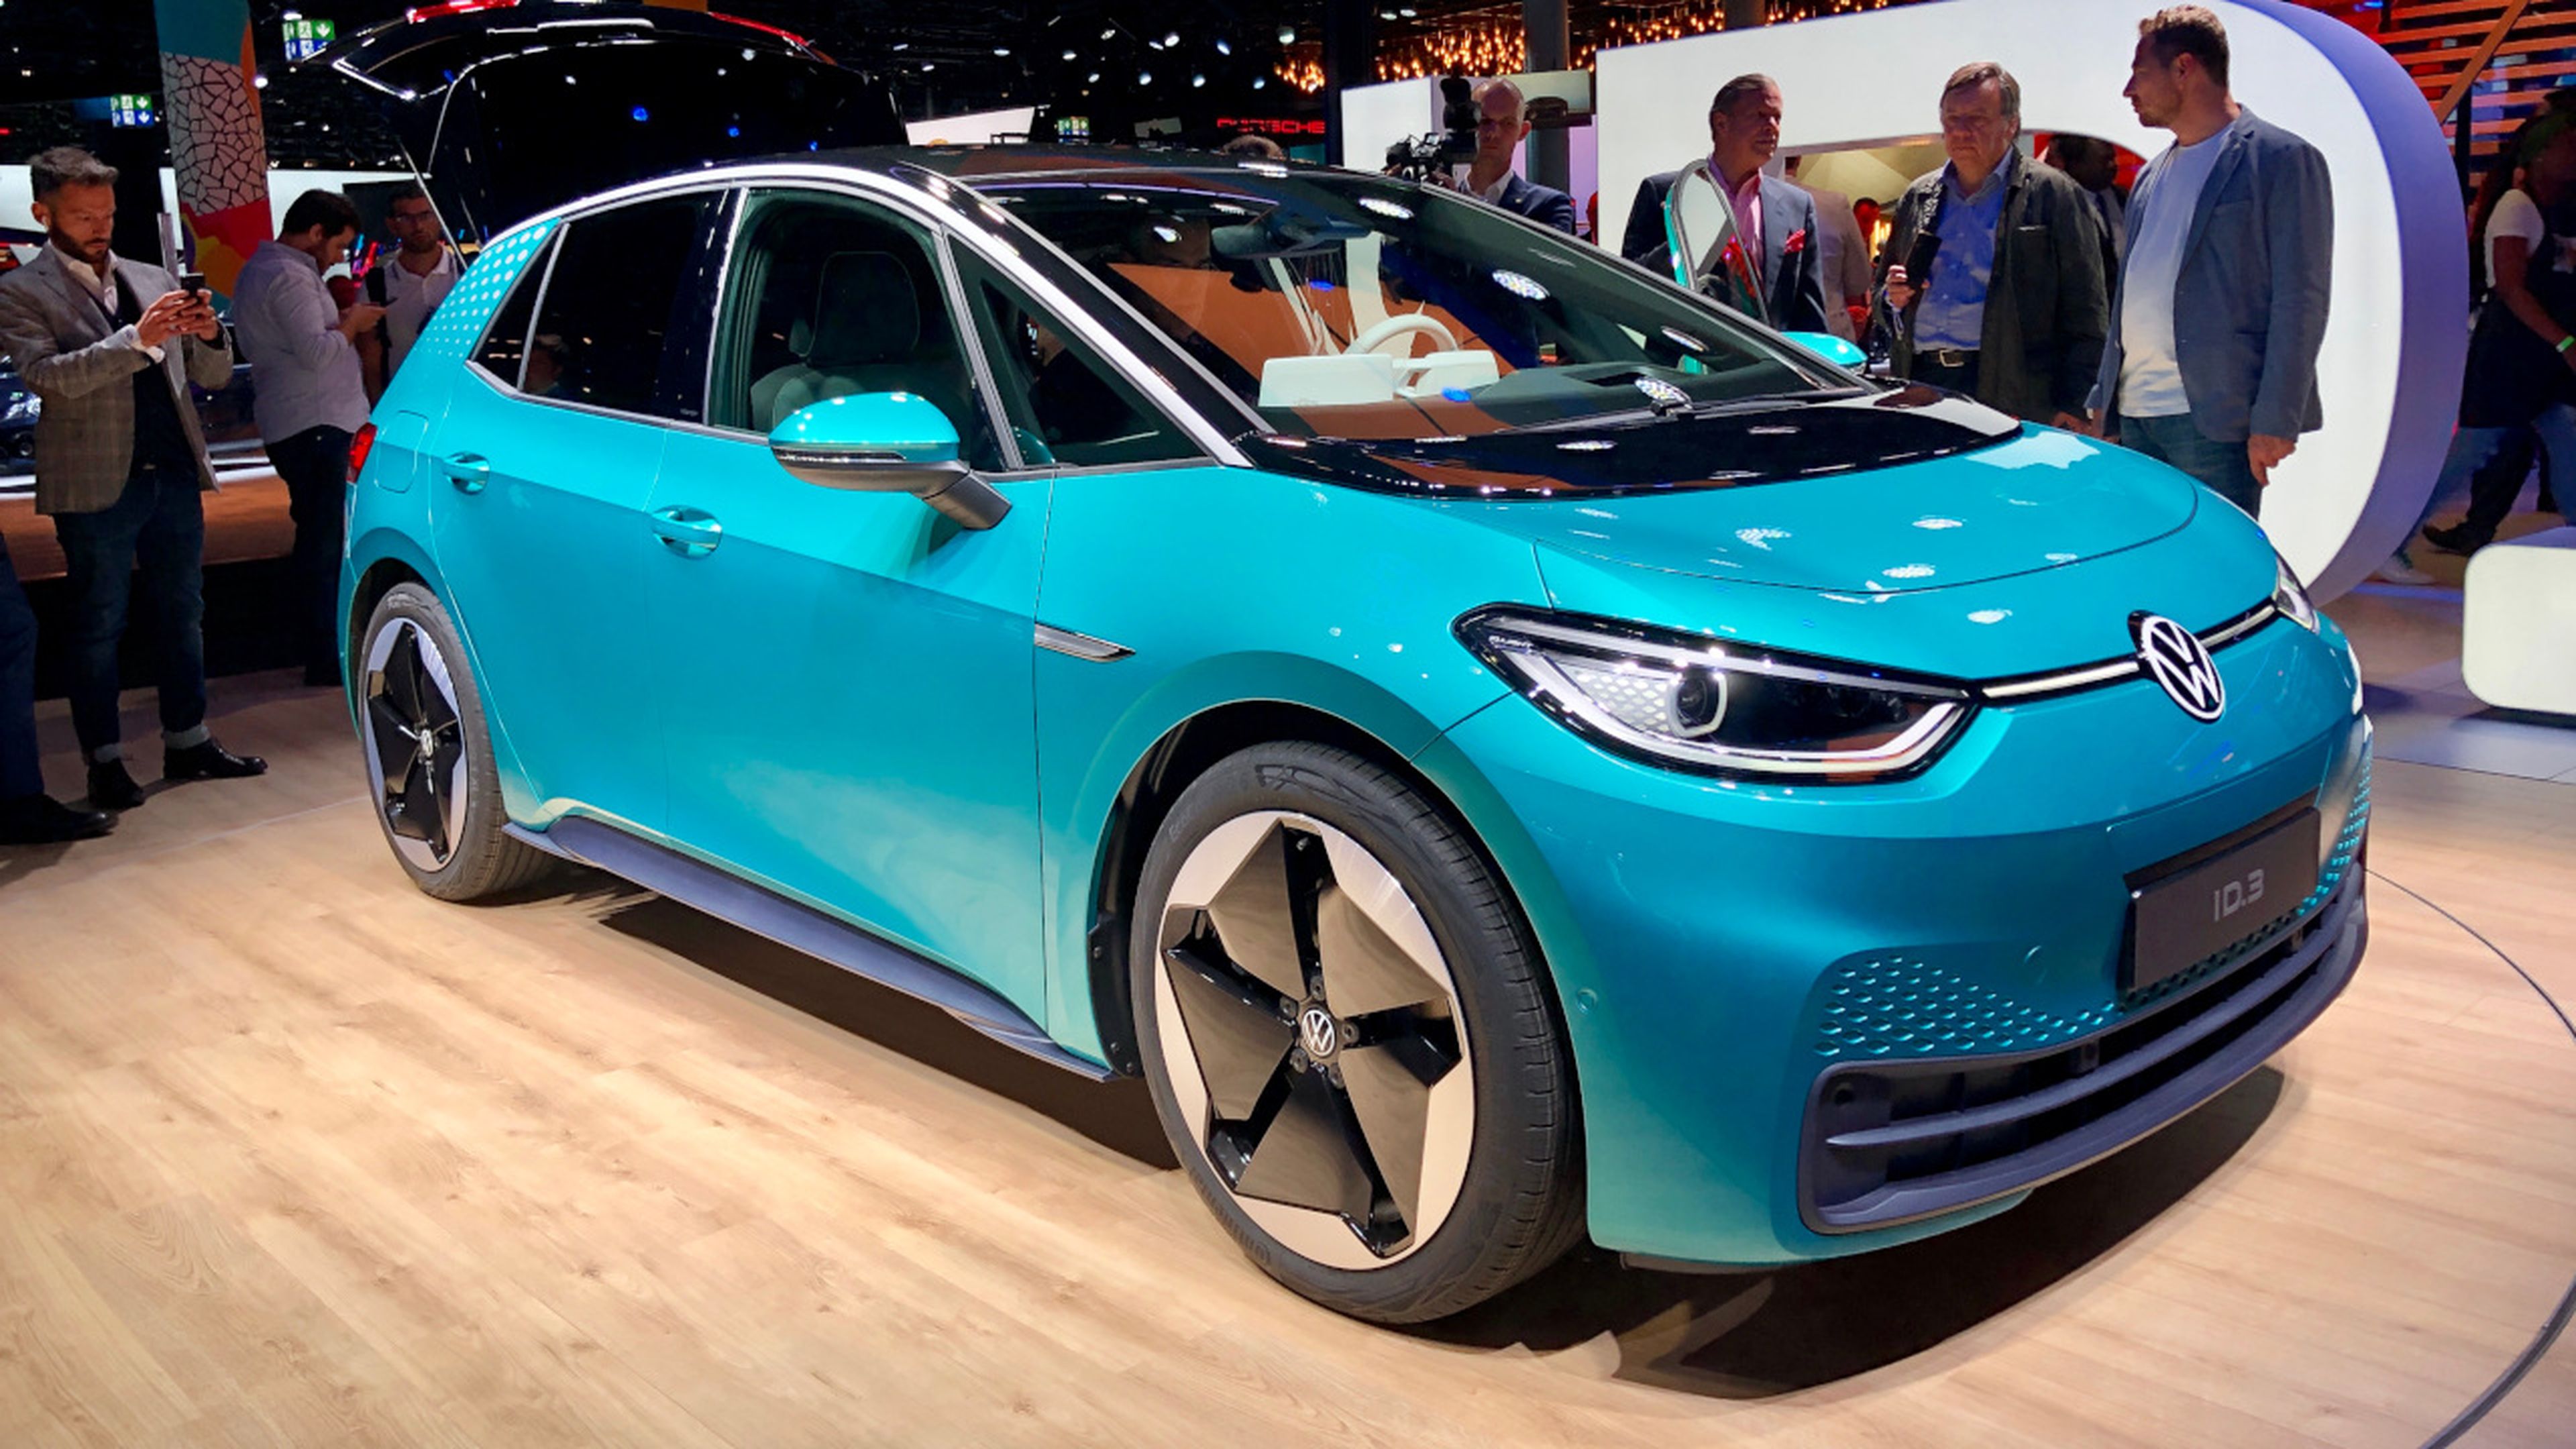 Imagen del Volkswagen ID.3, el primer eléctrico 100% de la marca alemana, presentado en el Salón de Frankfurt 2019.